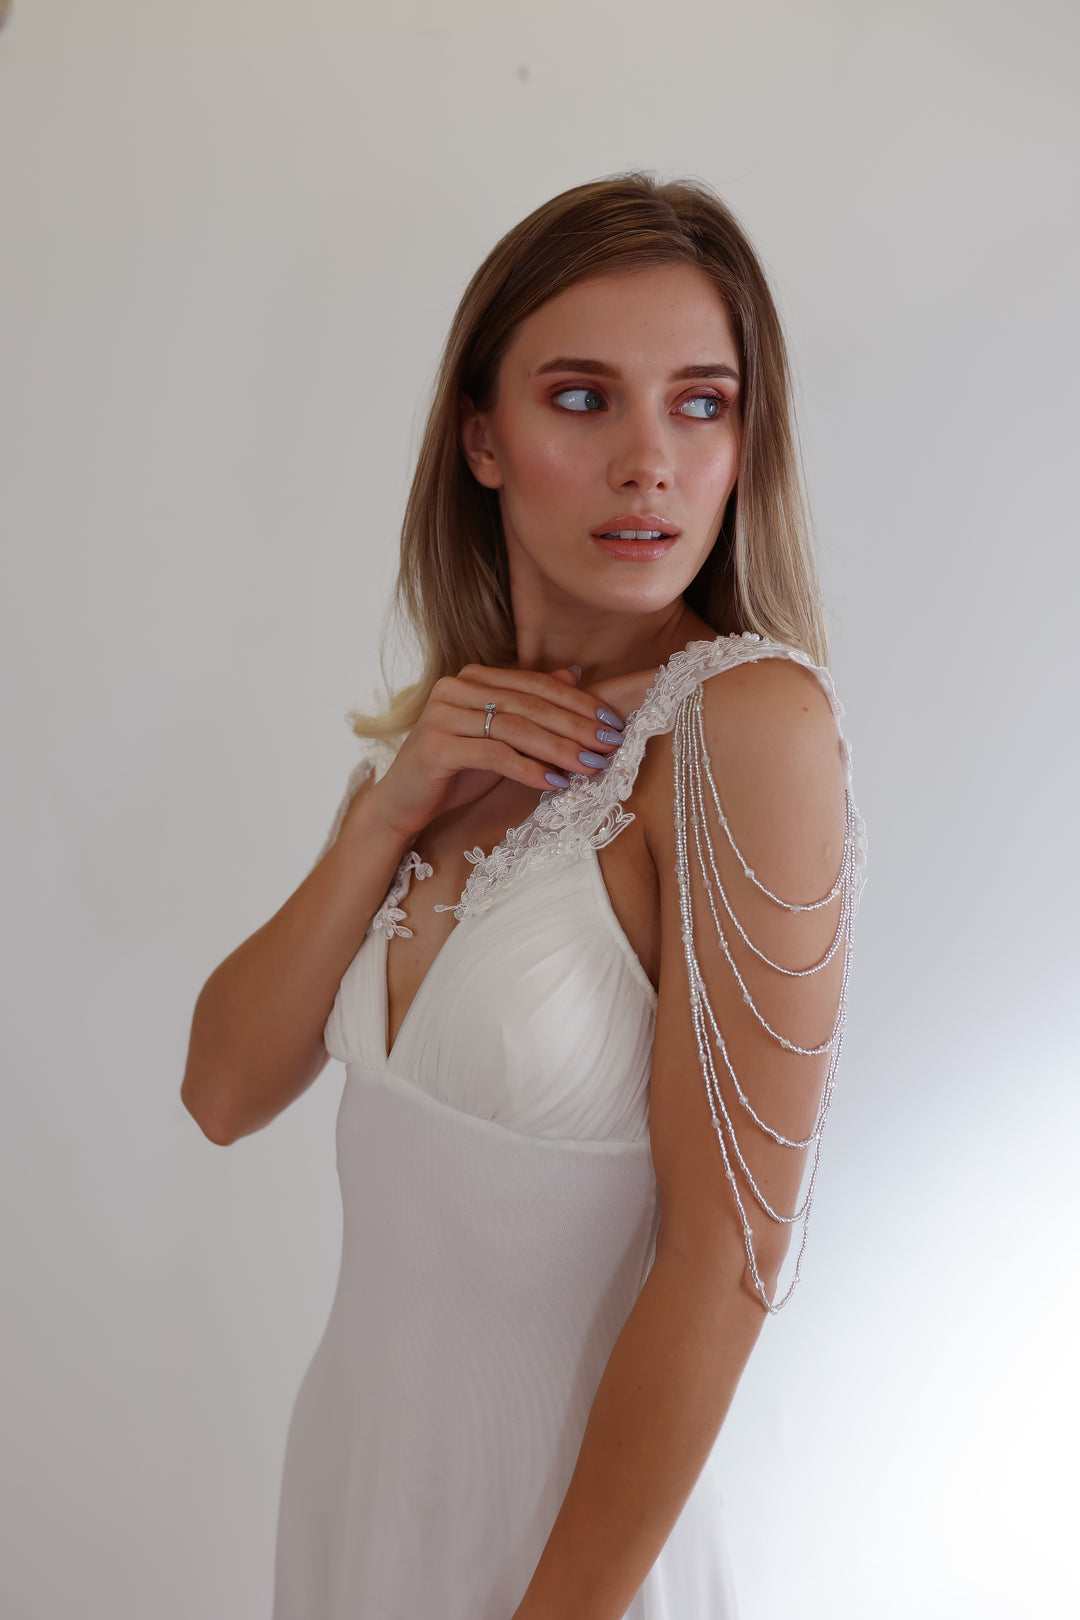 Lace Bridal Epaulettes Sleeves With Crystal Chains  sleeve wedding dress - StudioSharonGuy